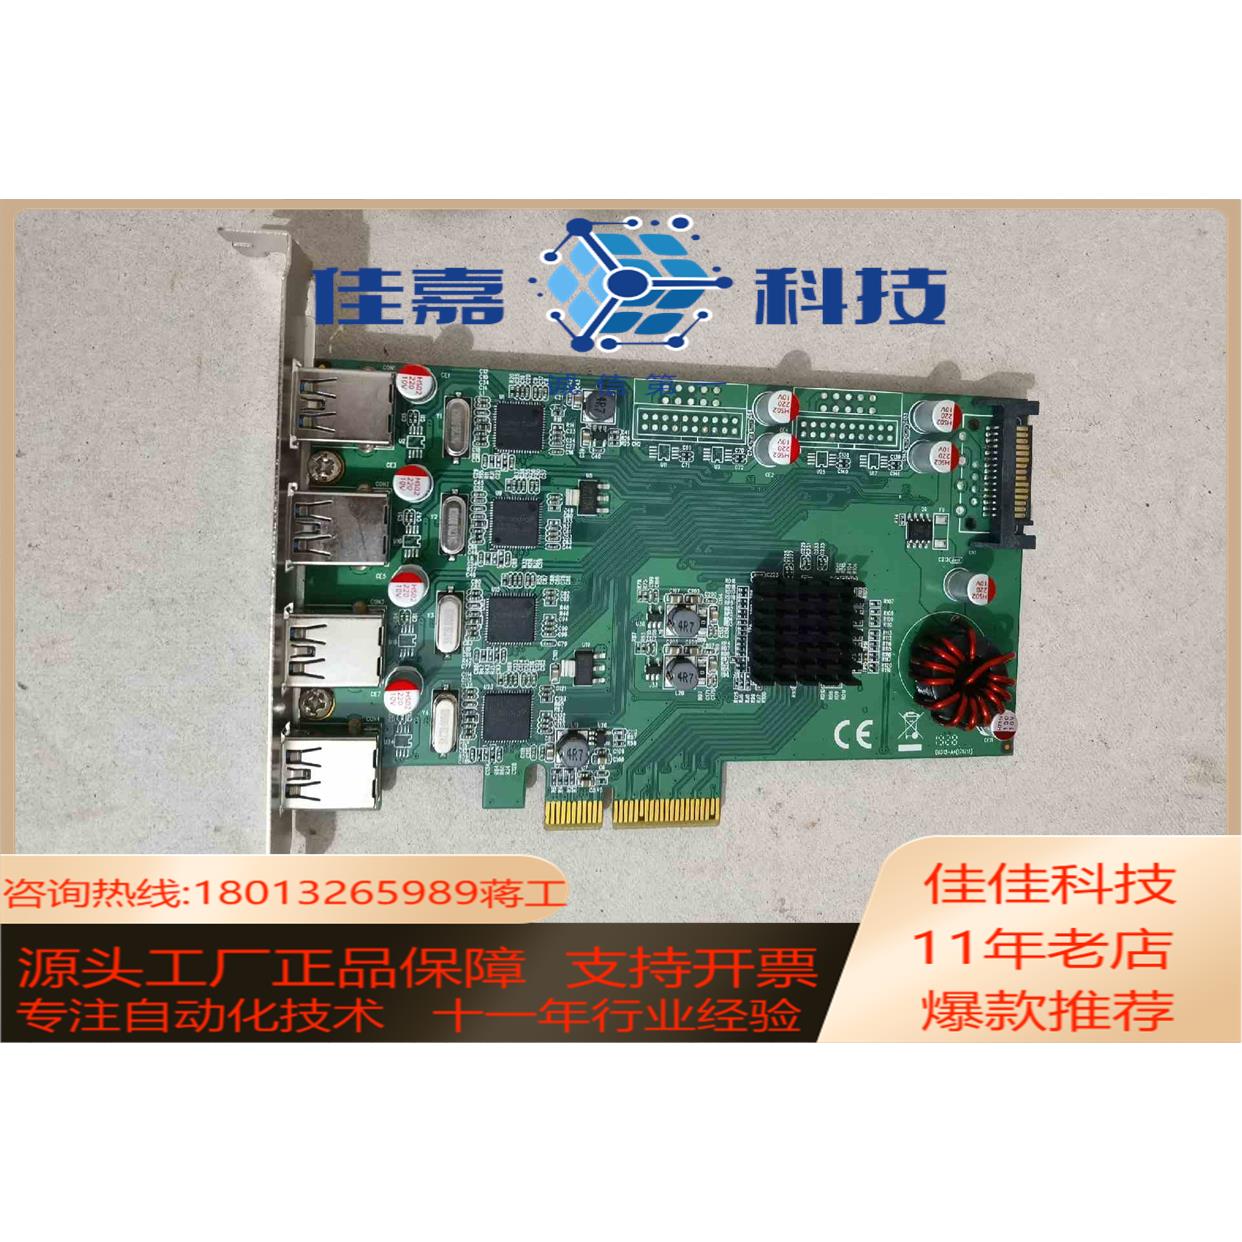 现货西霸SYBA FG-EU348-2高速USB3扩展卡， - 图1